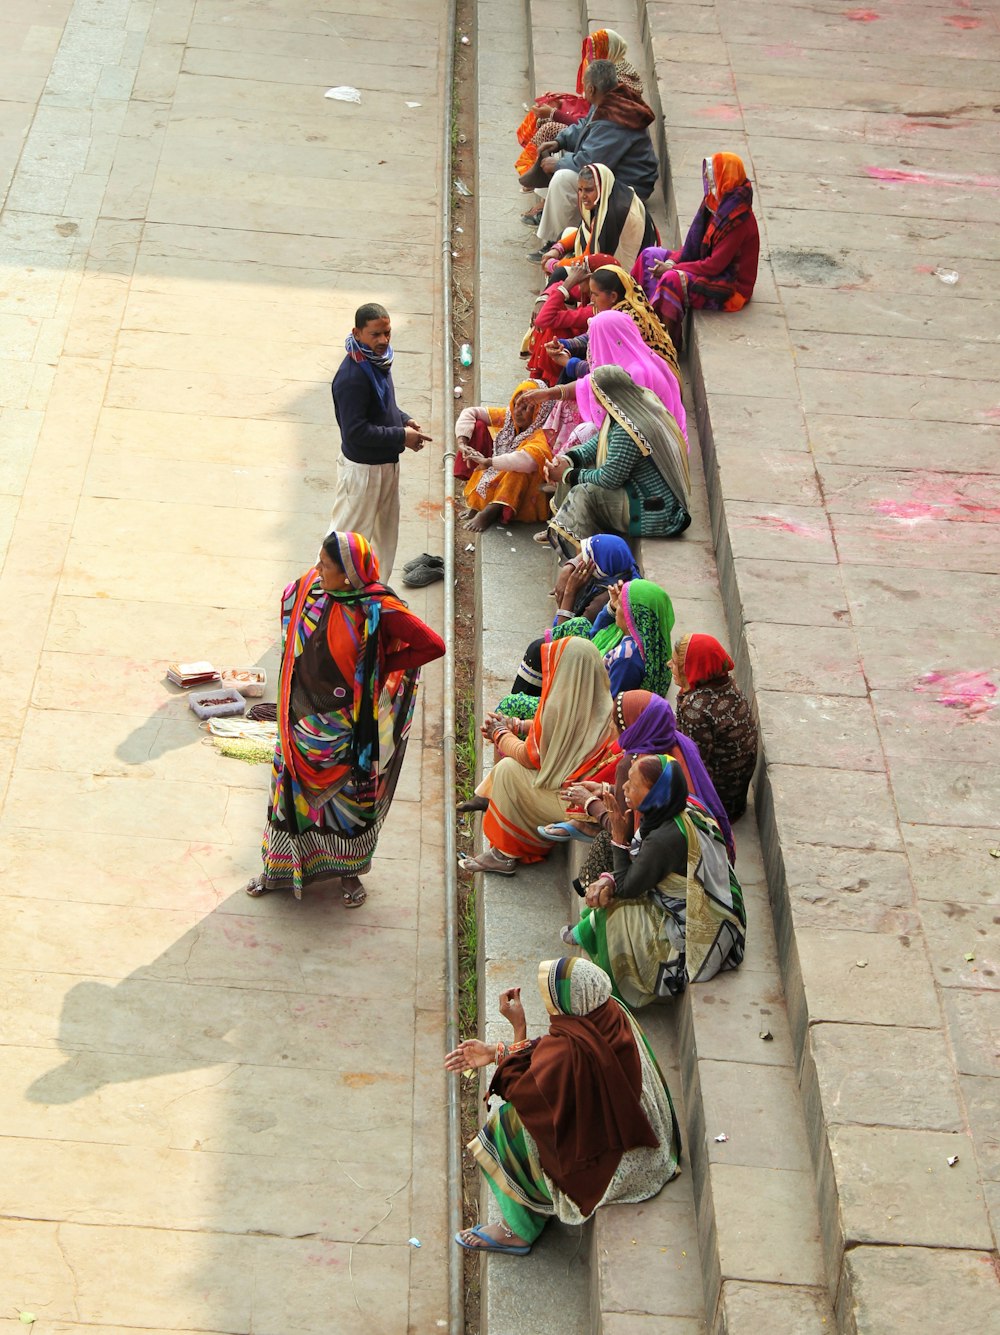 women wearing sari dress sitting on concrete stairs during daytime